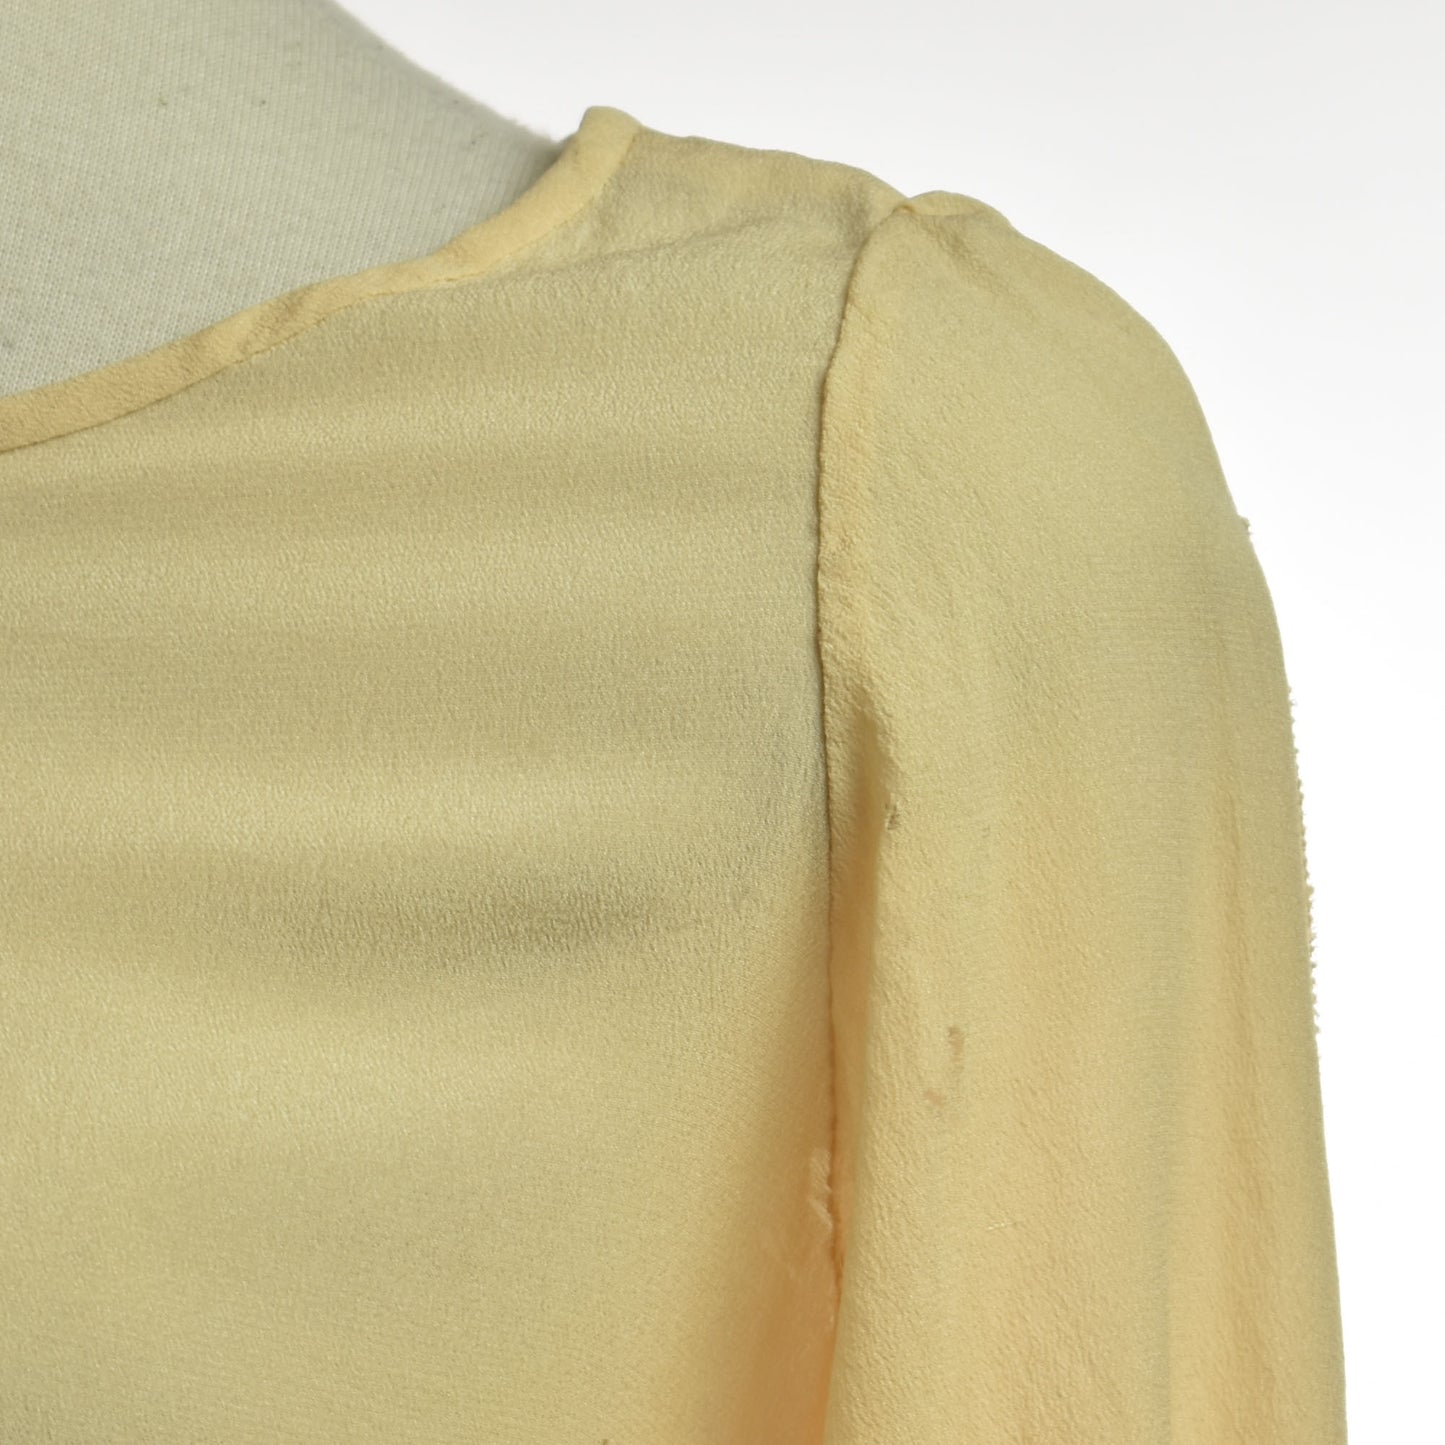 Vintage 20s Dusty Rose Silk Long Open Sleeve Flapper Dress